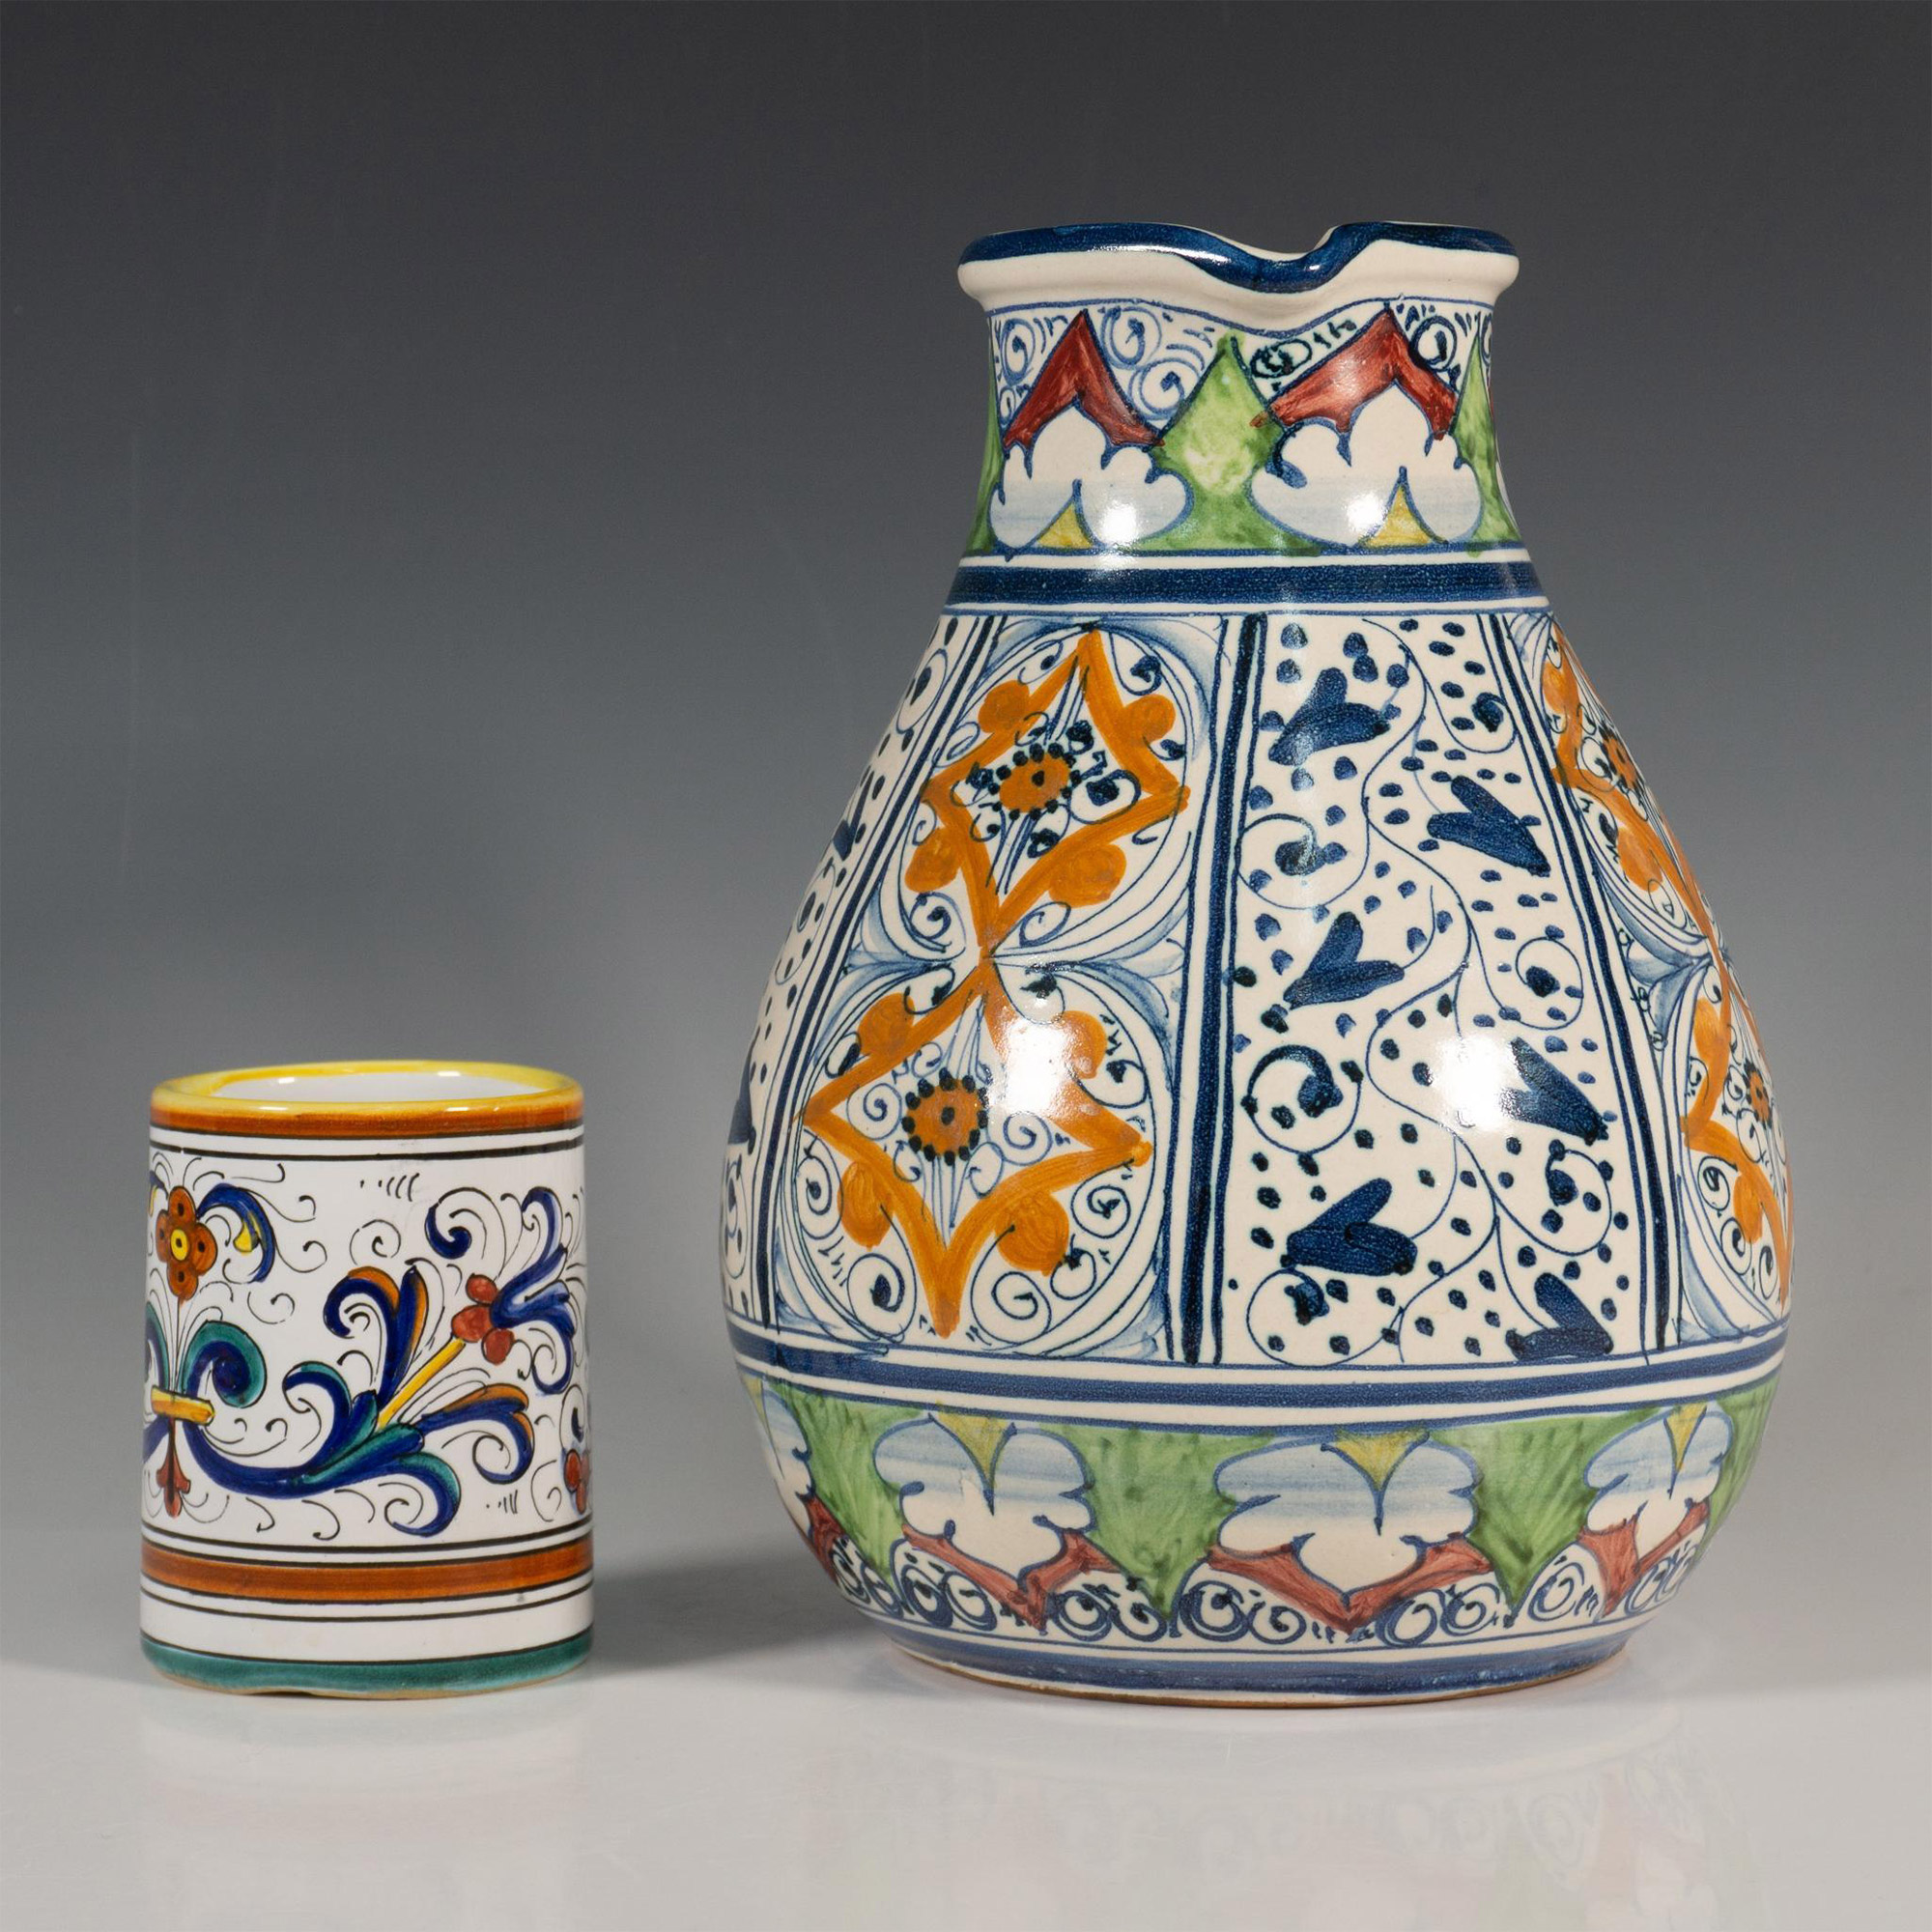 Original Hand-Painted Ceramic Carafe & S. Gimignano Tumbler - Image 3 of 5